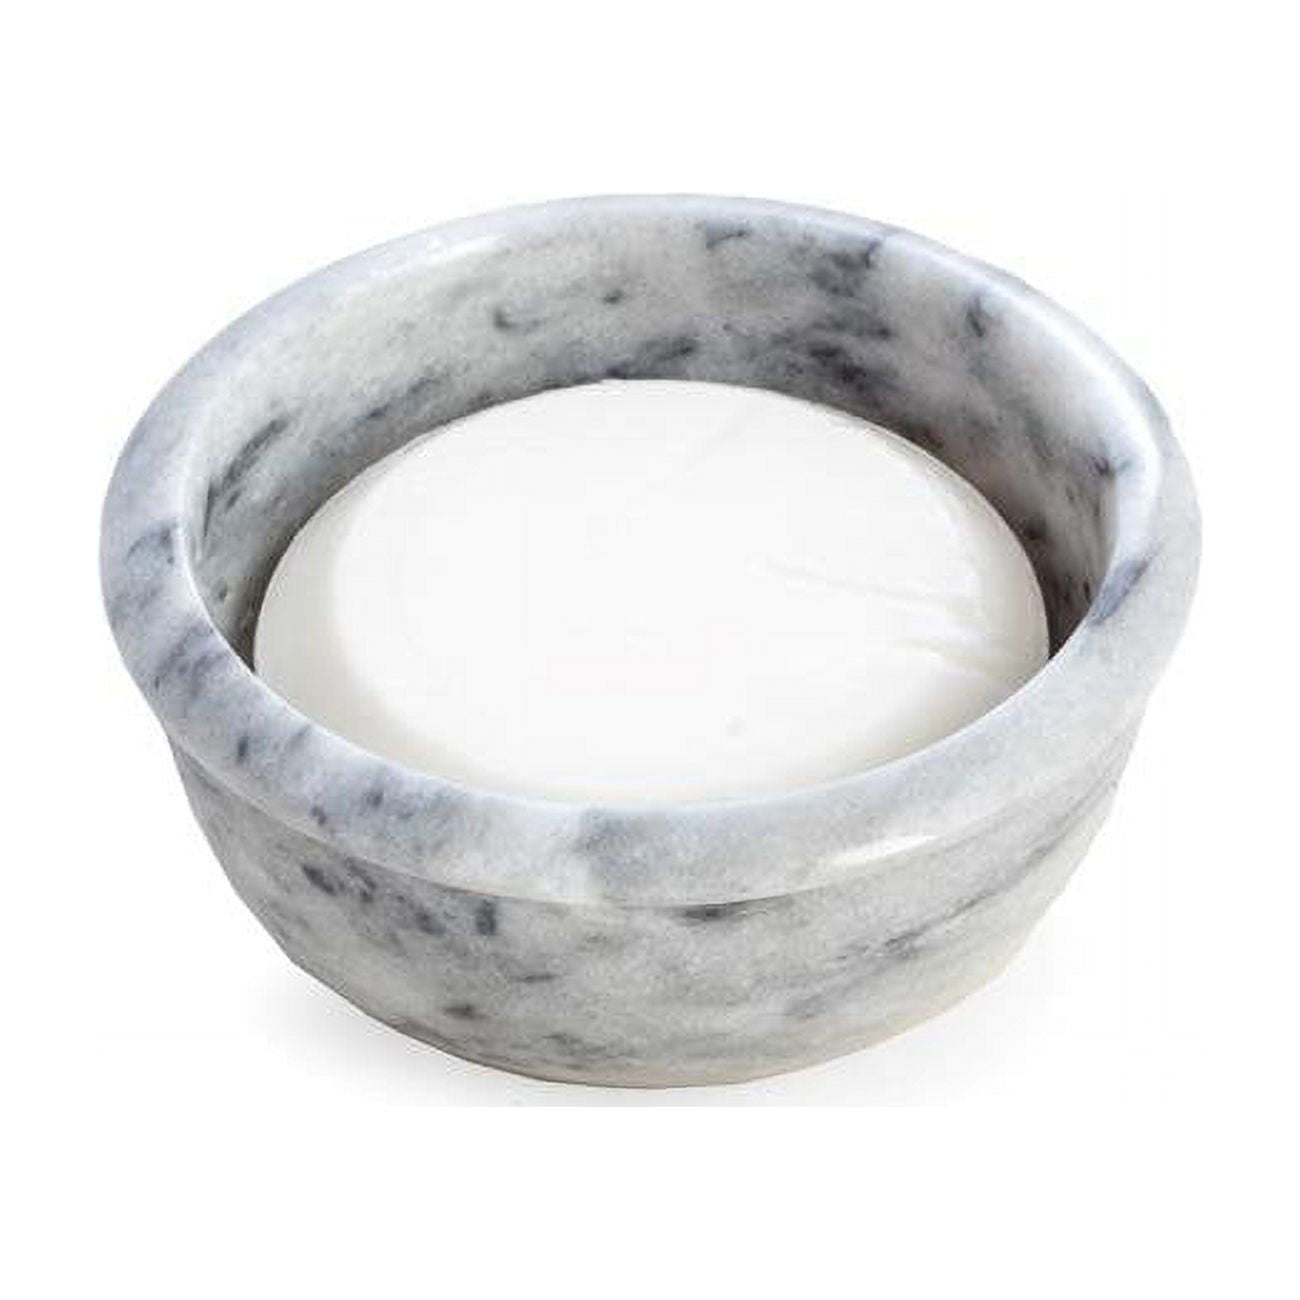 Bey-berk International Bb15 Solid Marble Shaving Bowl , Gray & White